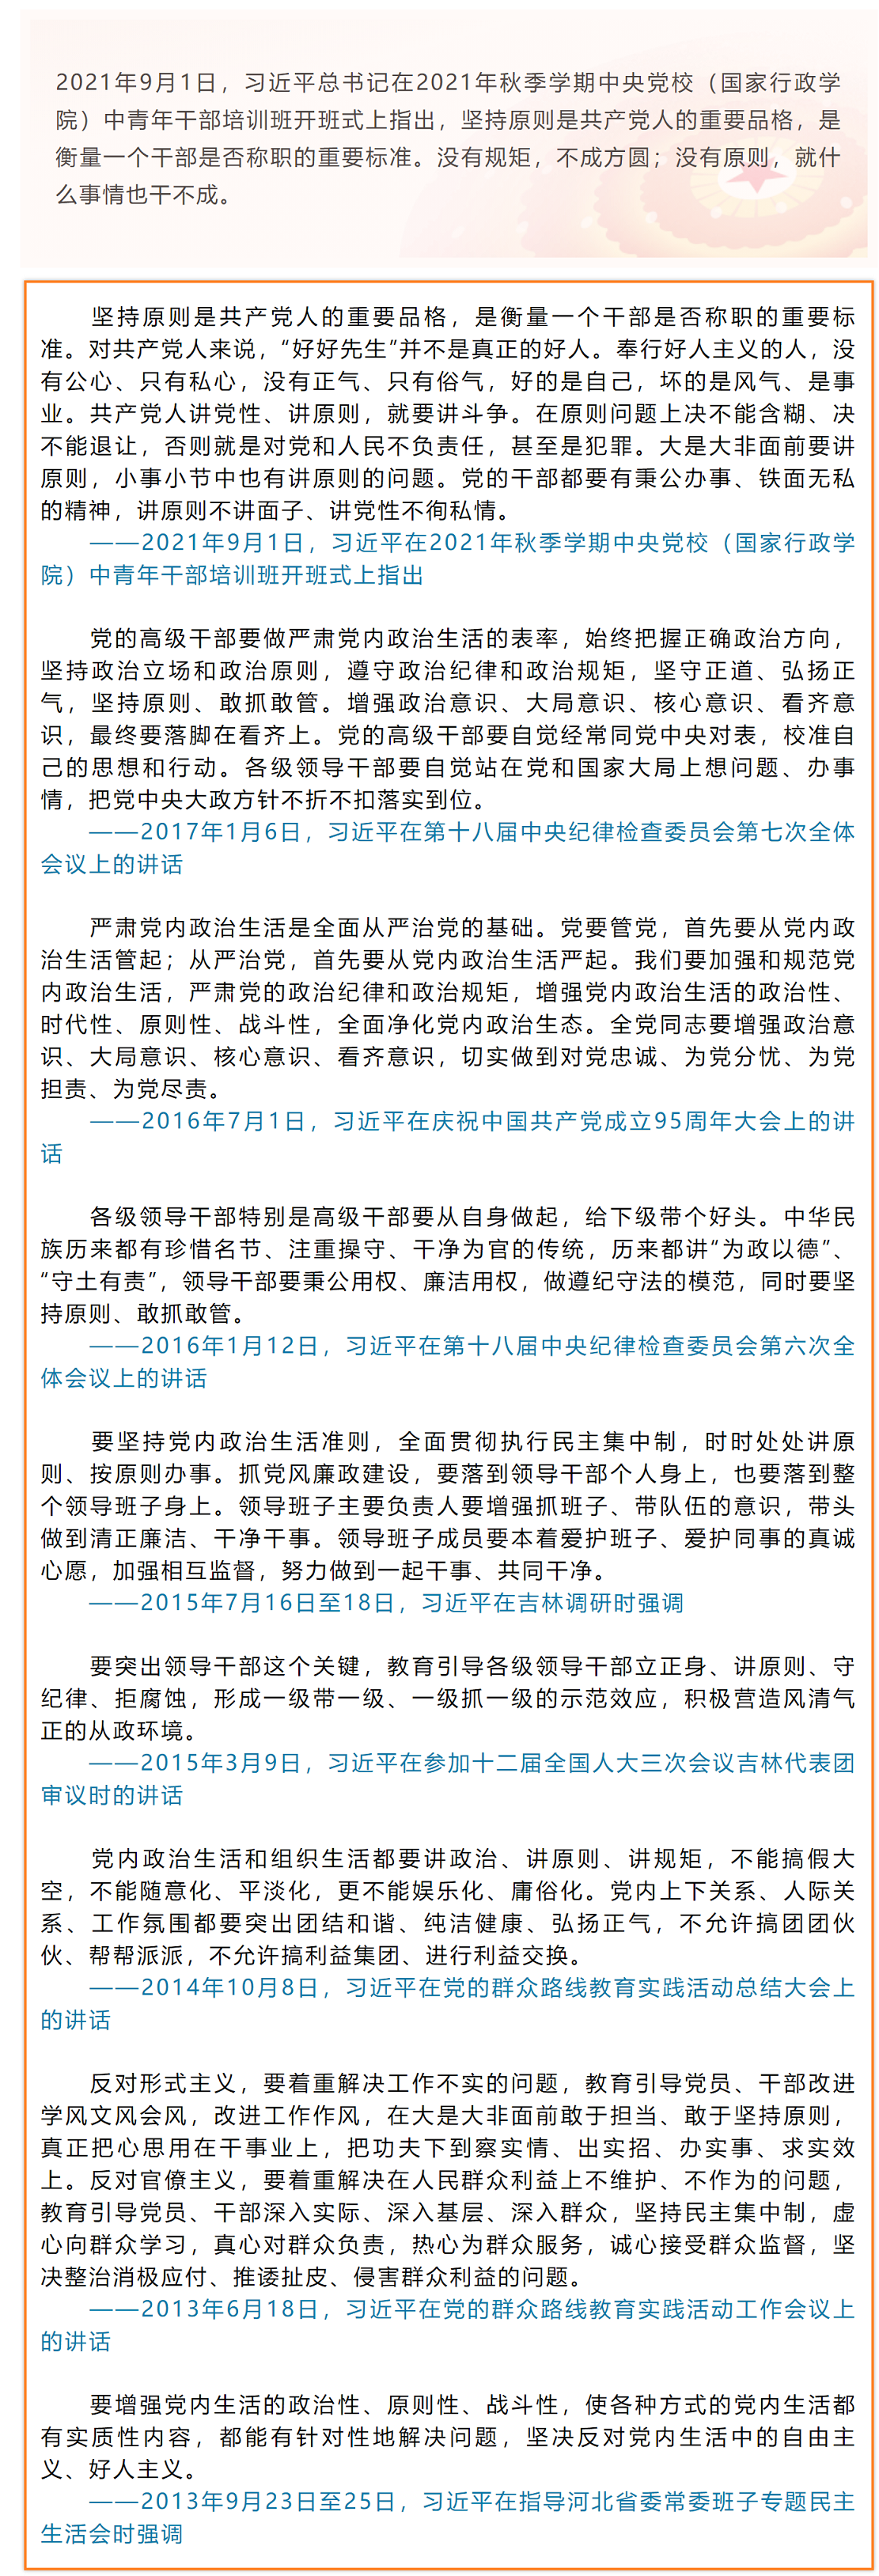 FireShot Capture 354 - 习近平：坚持原则是共产党人的重要品格 - mp.weixin.qq.com.png